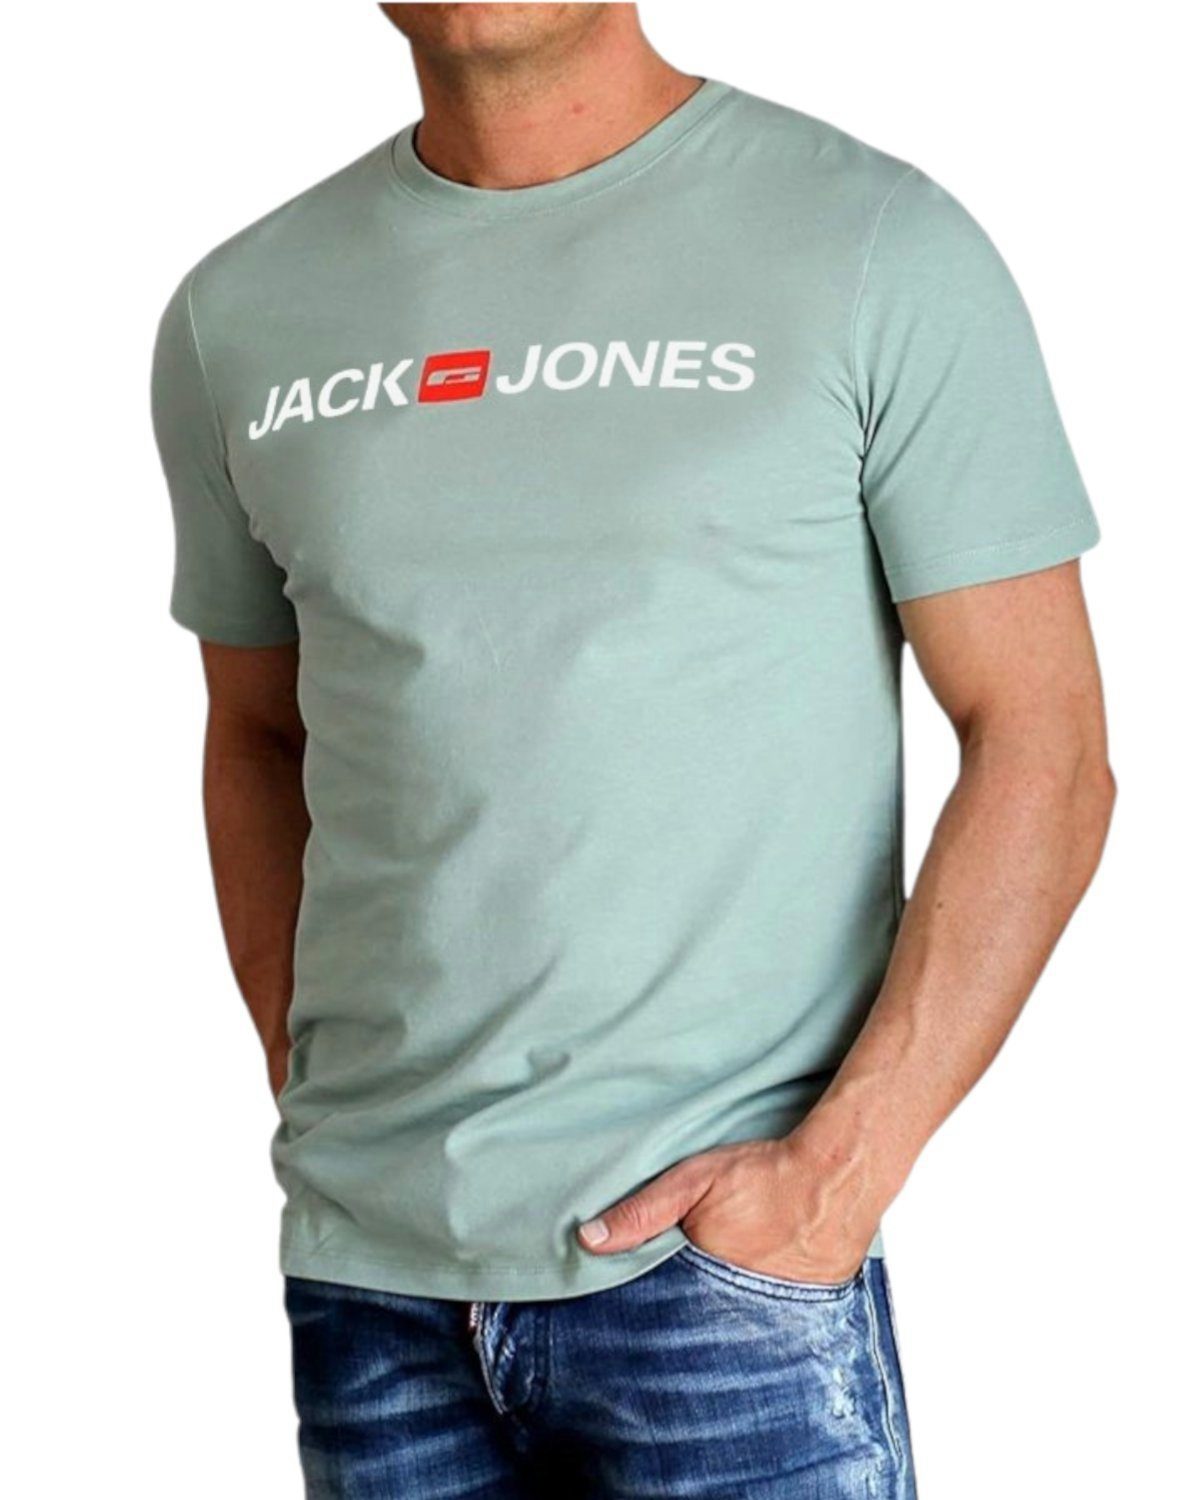 & Jones 27 Printdruck, mit Baumwolle 3er-Pack) Jack (Spar-Set, T-Shirt aus Slim Mix